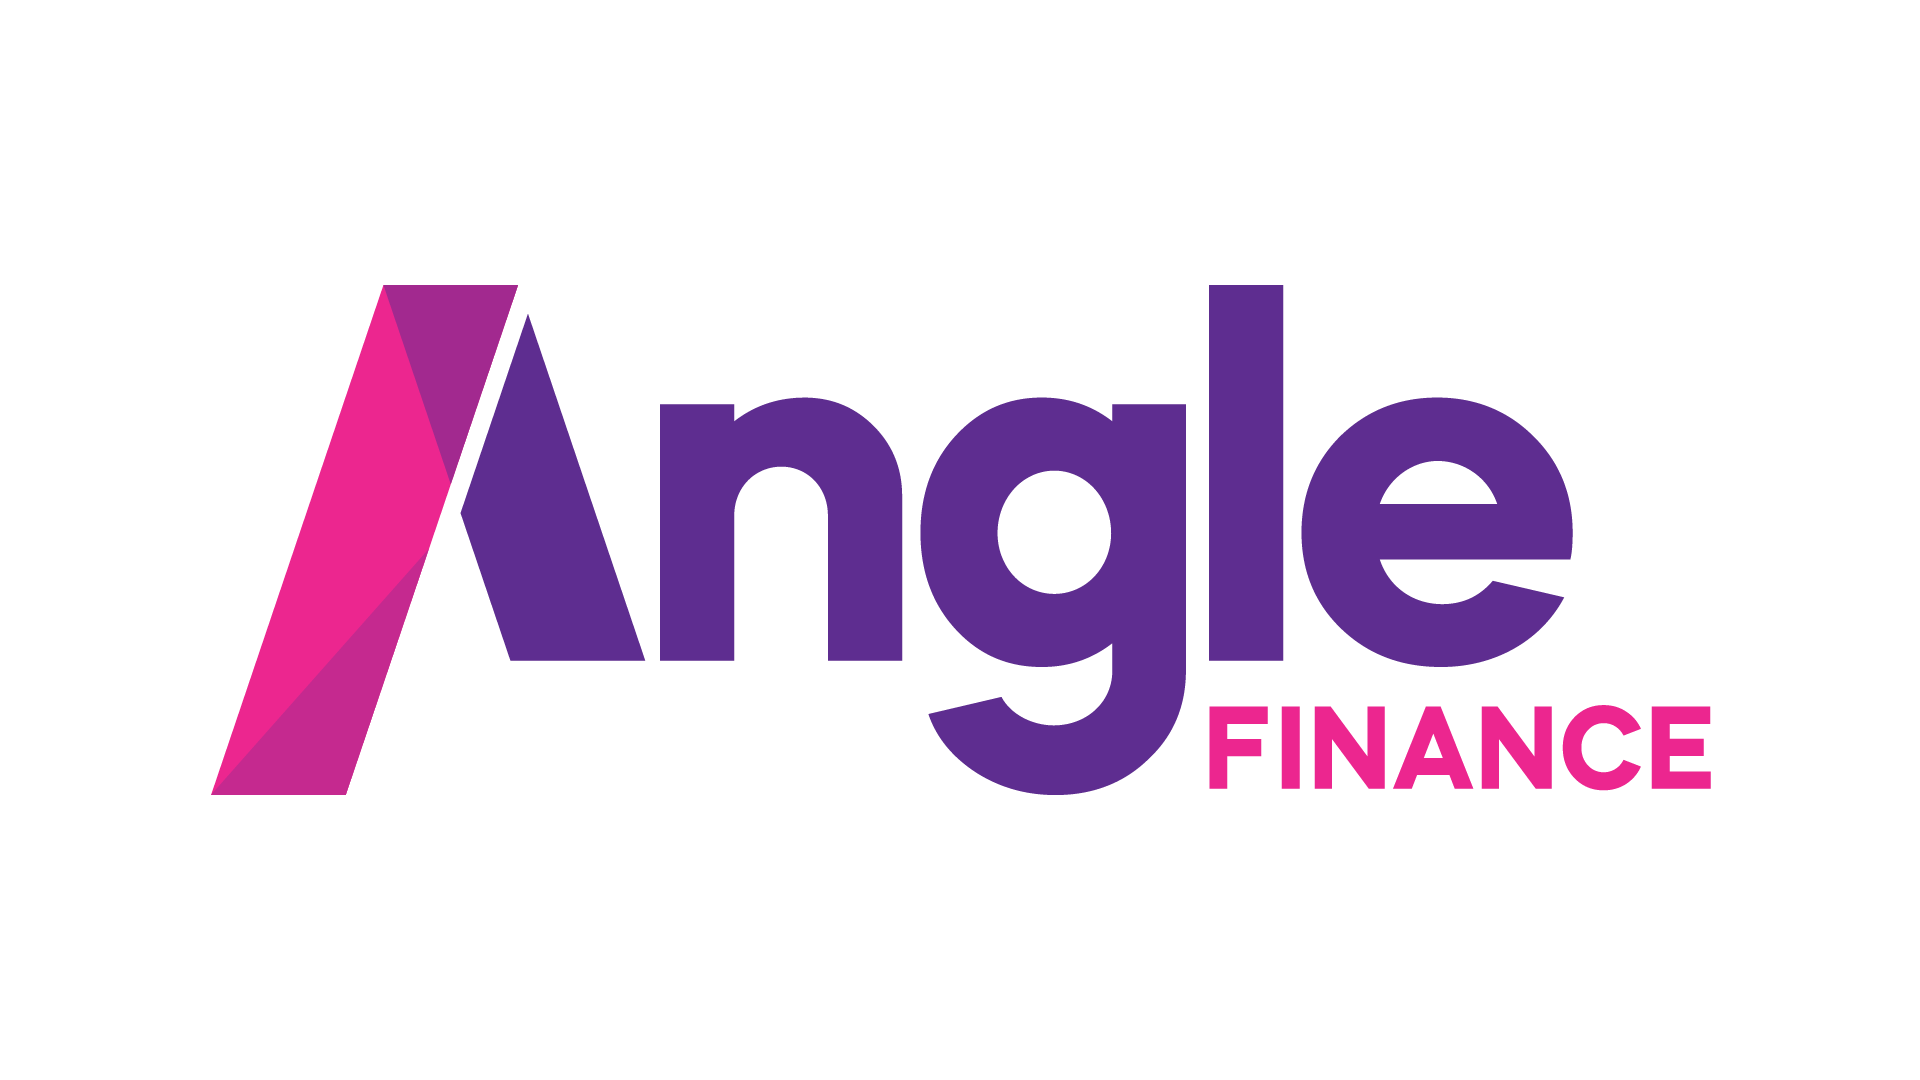 Angle Finance